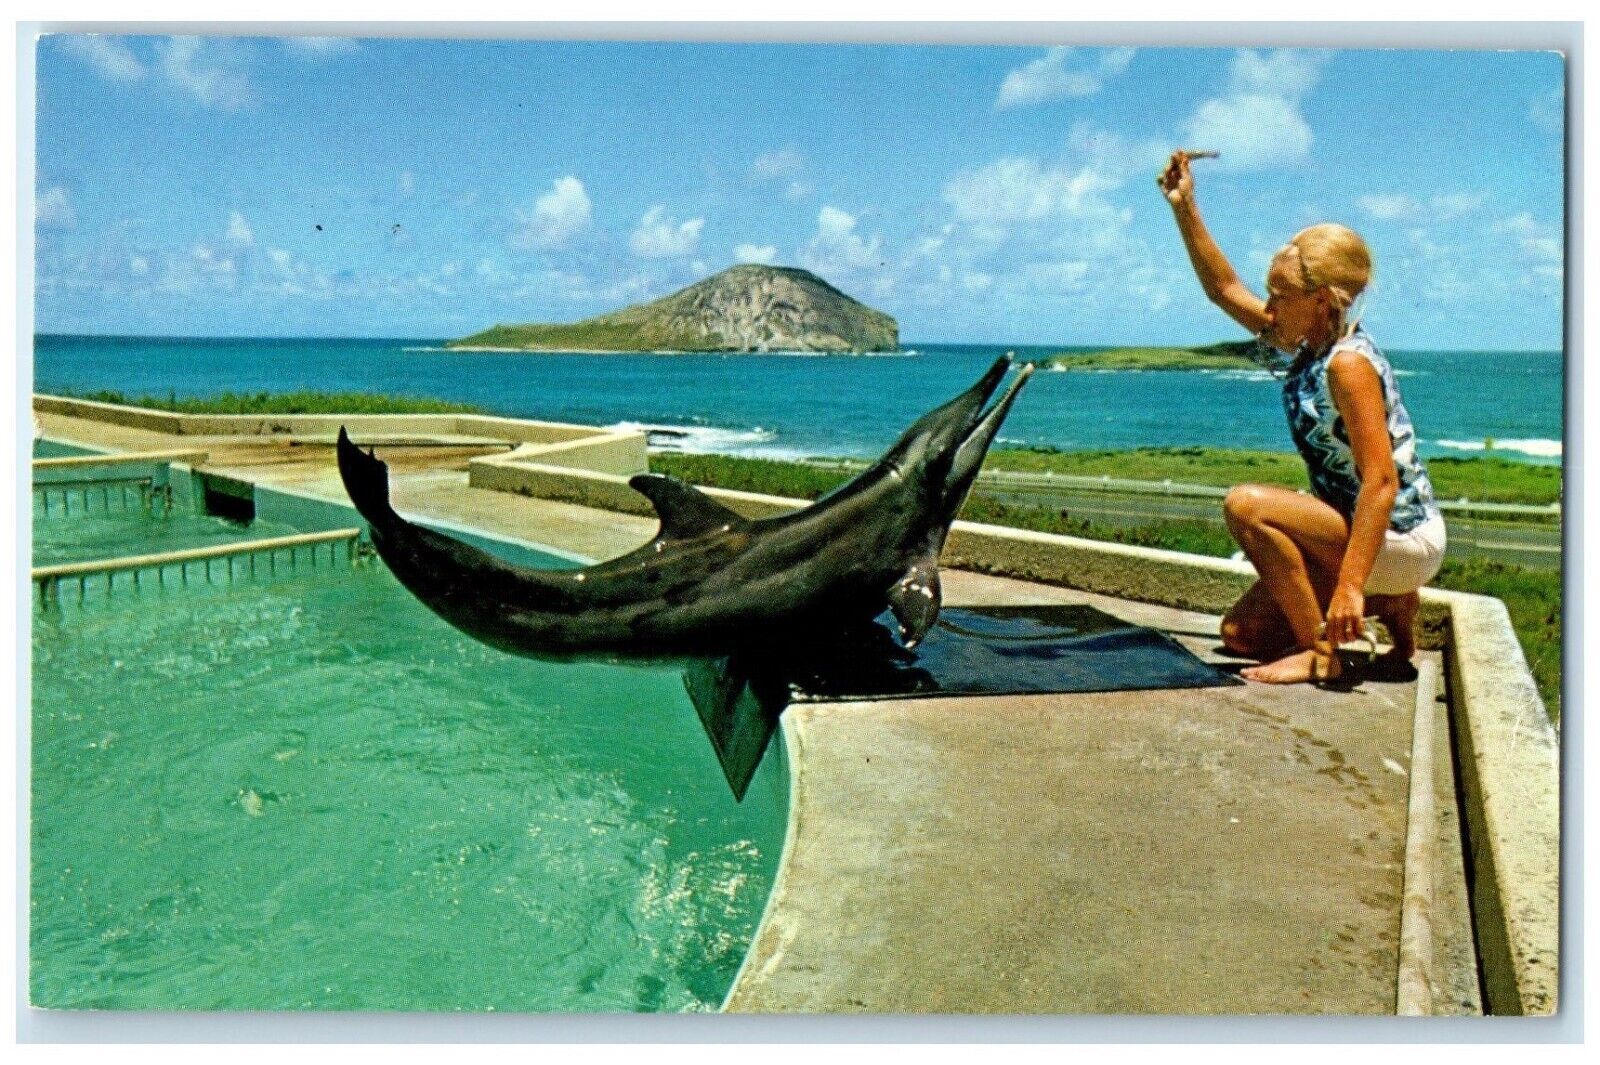 c1960 Breath-Taking Sea Life Park Makapuu Point Oahu Hawaii HI Vintage Postcard